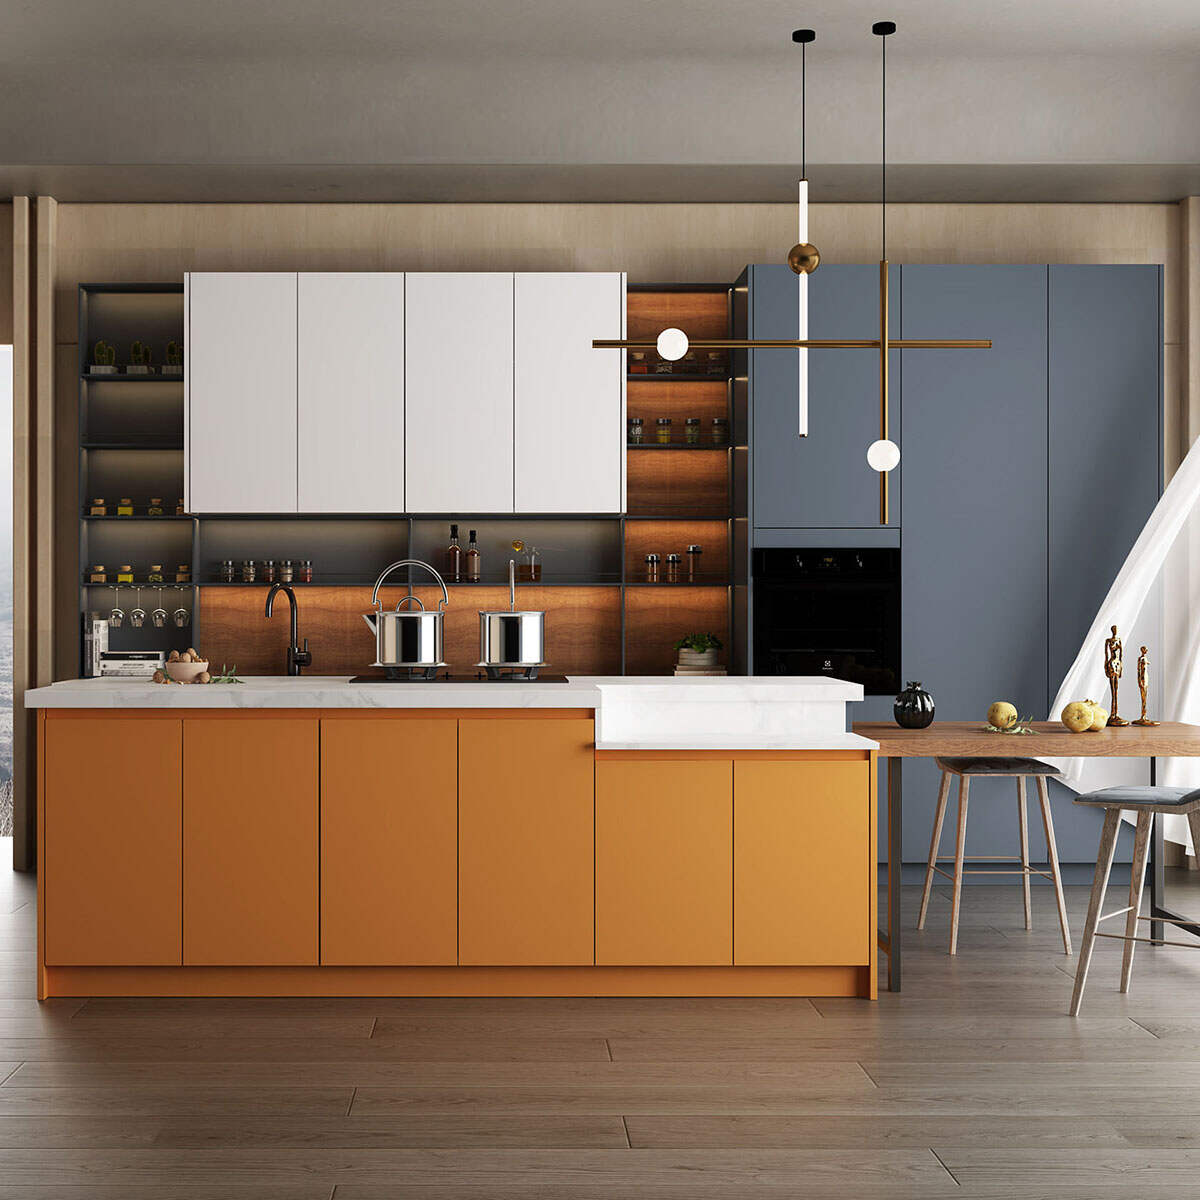 Luxury Stainless Steel Kitchen Cupboards Modern Kitch...